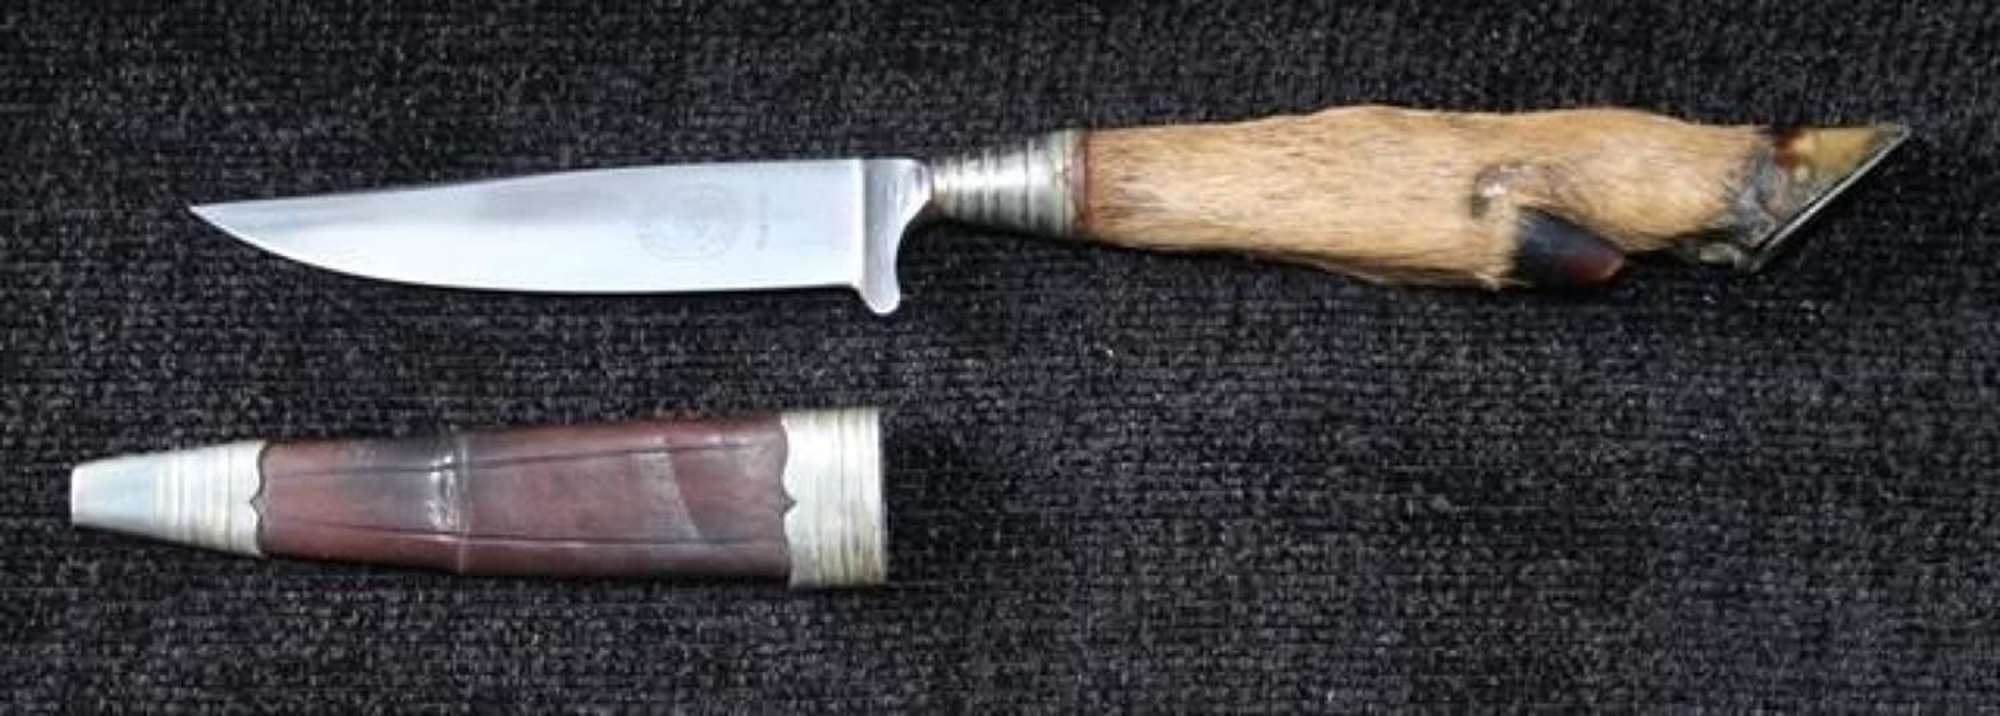 German Stag Hoof Handled Knife